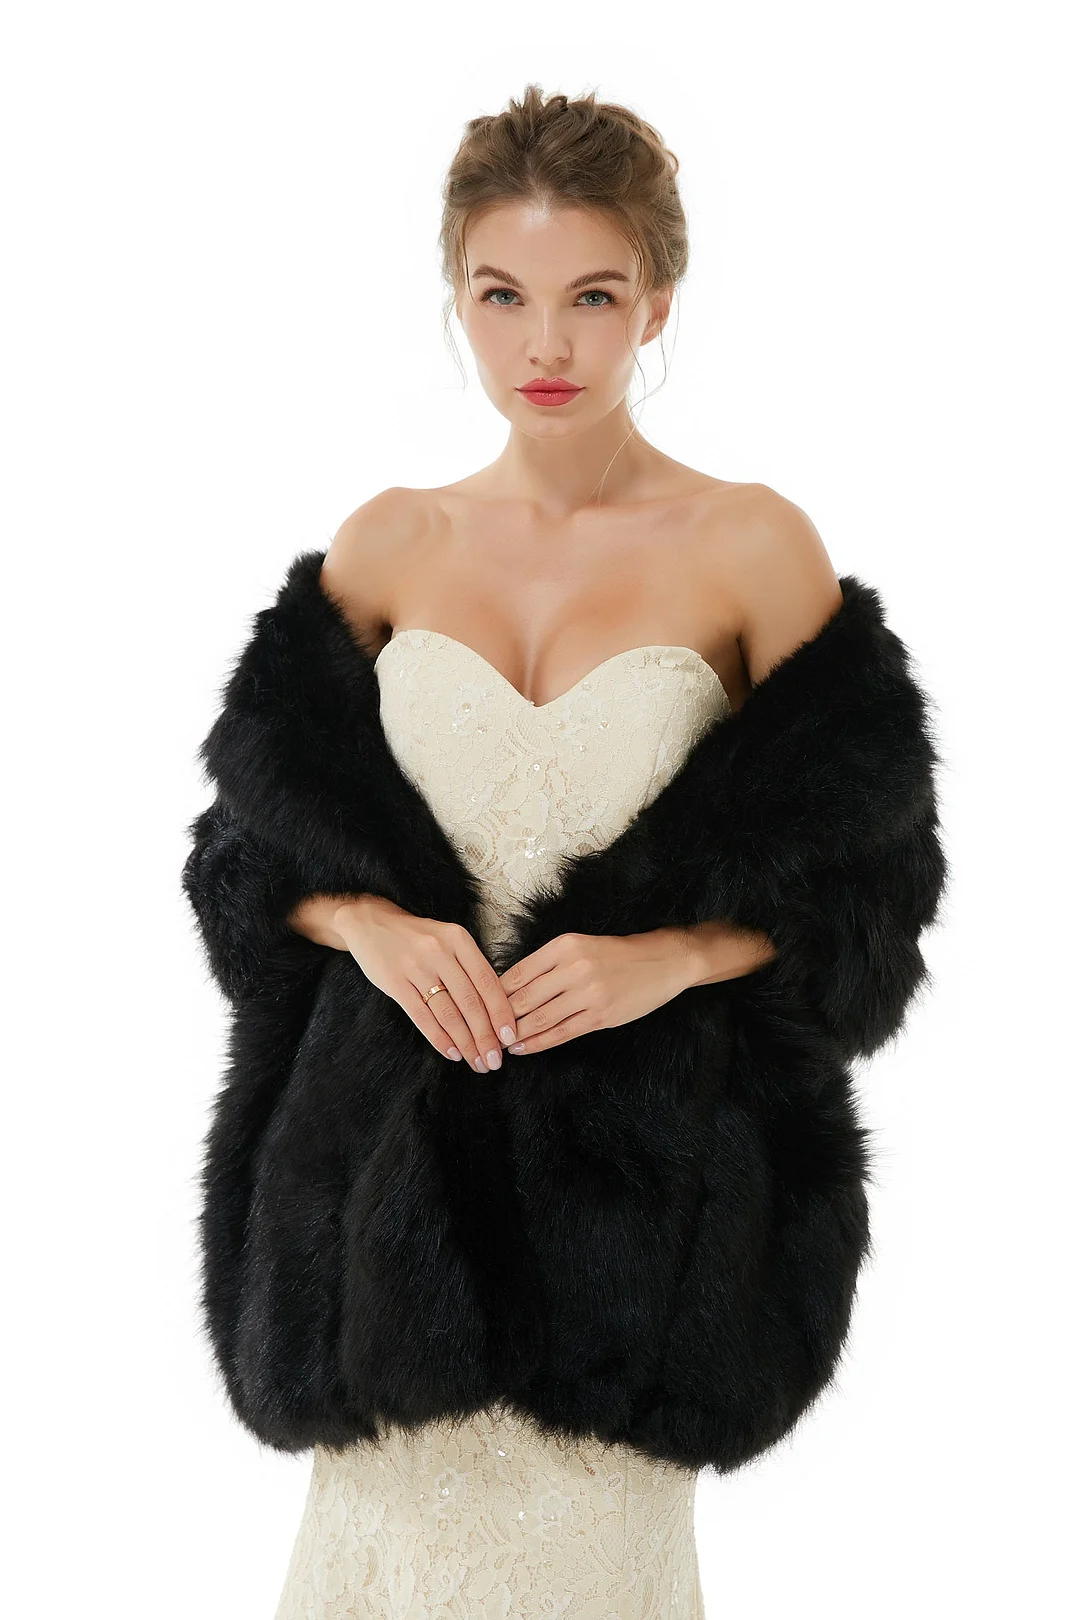 Bellasprom Faux Fur Wedding Wrap For Bride Black Shawl